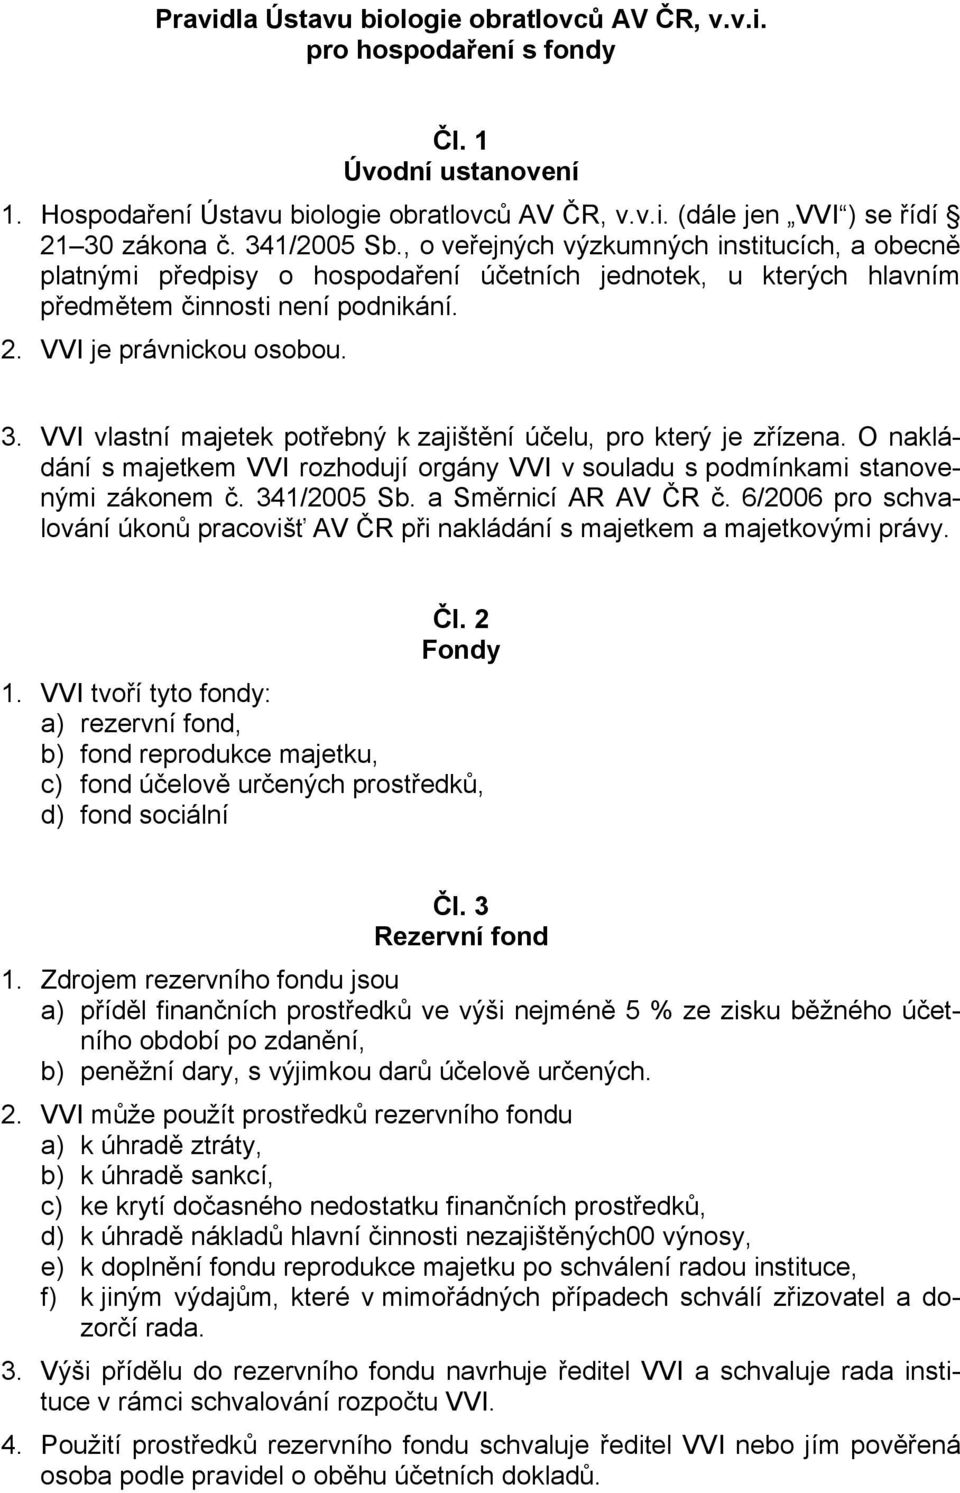 VVI vlastní majetek potřebný k zajištění účelu, pro který je zřízena. O nakládání s majetkem VVI rozhodují orgány VVI v souladu s podmínkami stanovenými zákonem č. 341/2005 Sb. a Směrnicí AR AV ČR č.